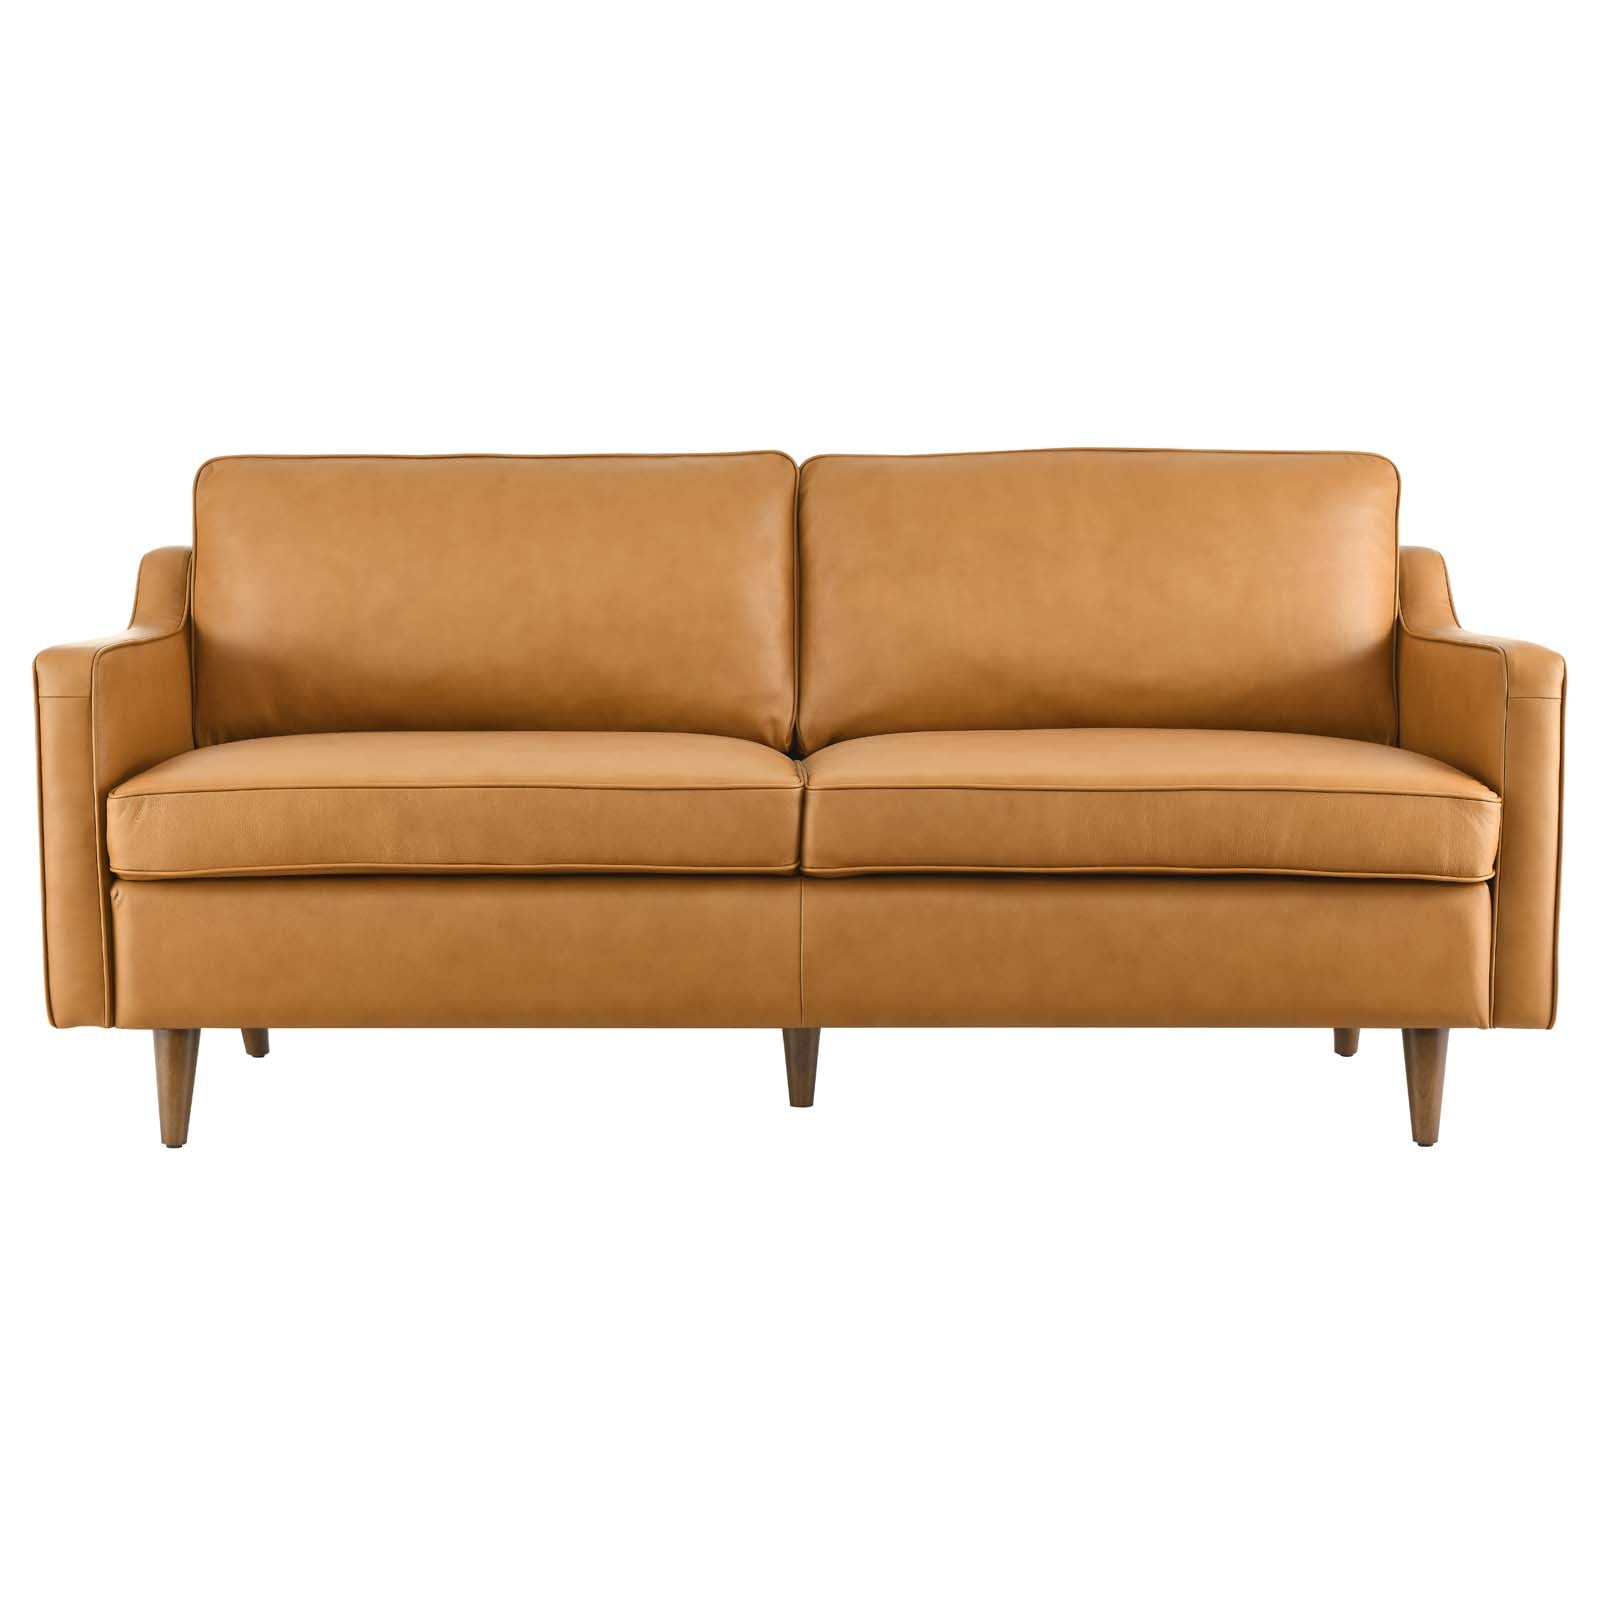 Modway Sofas & Couches - Impart Genuine Leather Sofa Tan